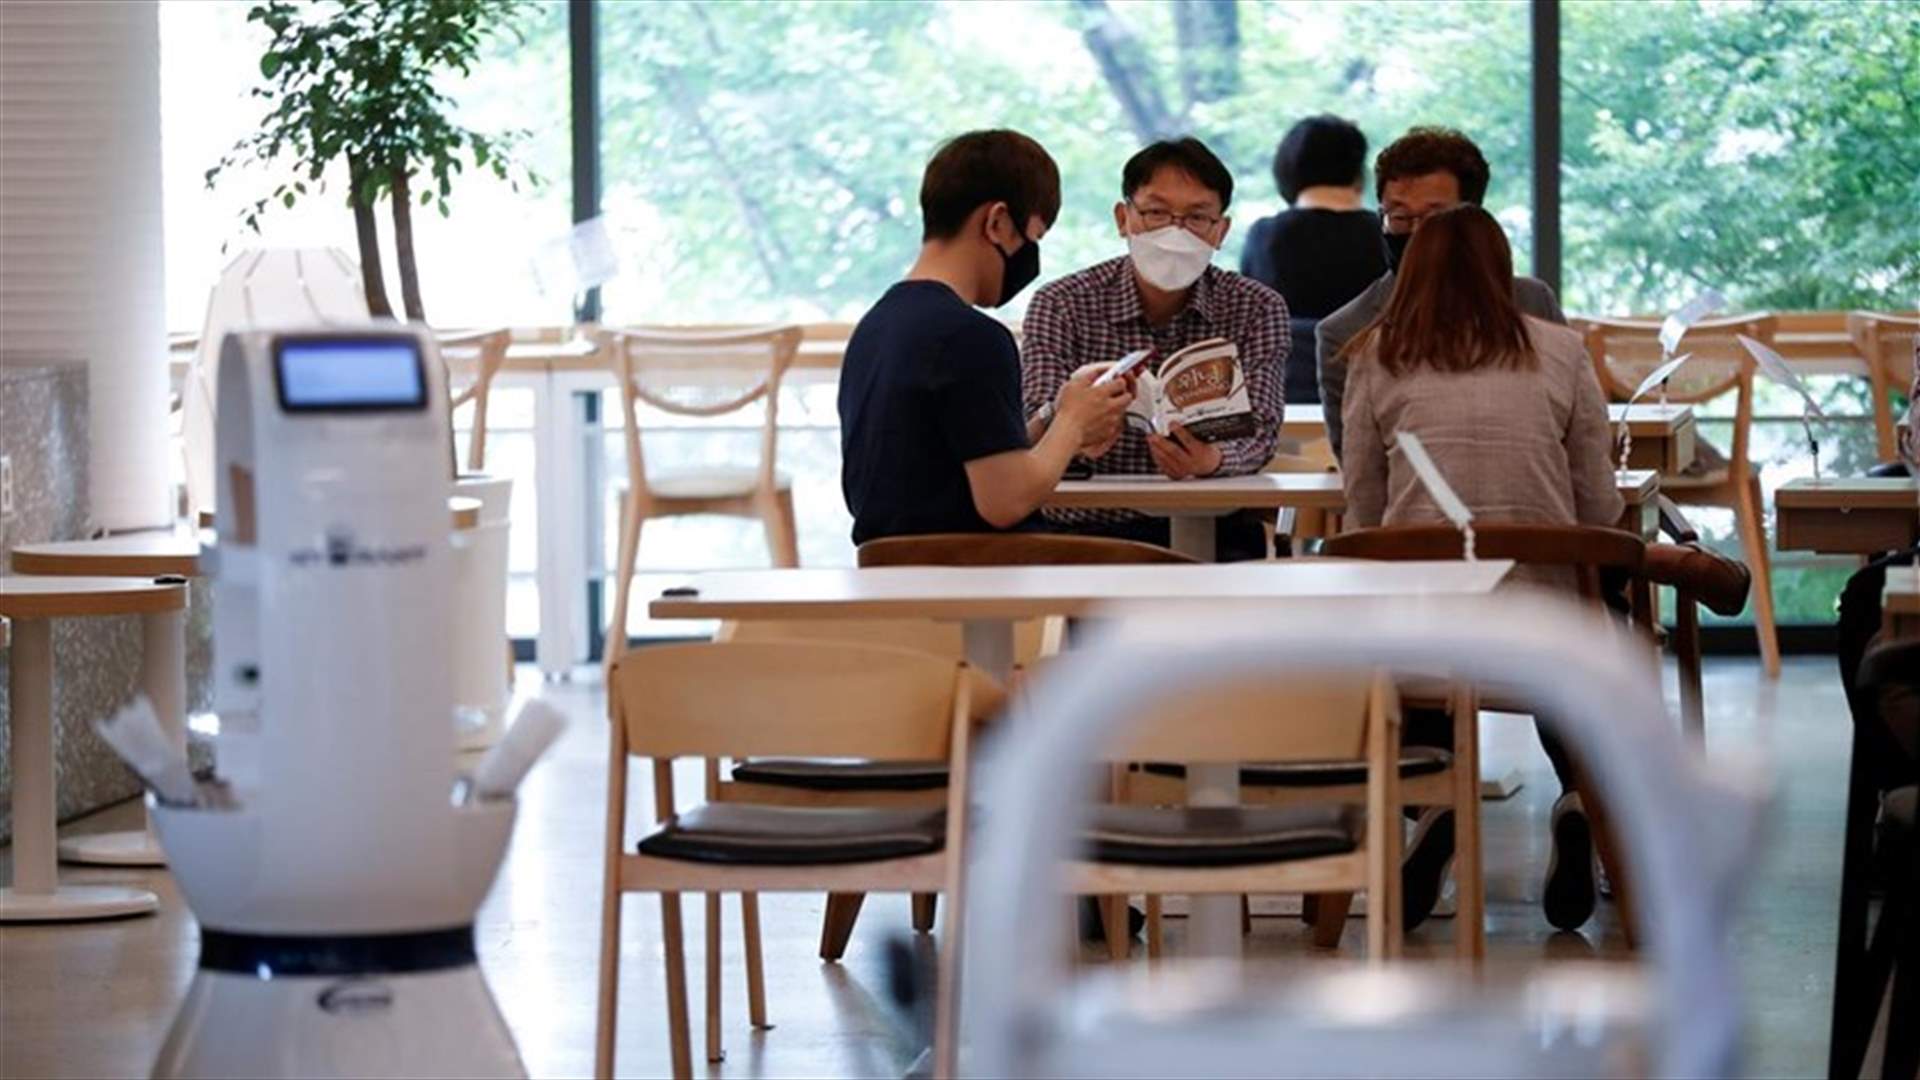 مقهى في كوريا الجنوبية يوظف روبوتاً التزاماً بالتباعد الاجتماعي